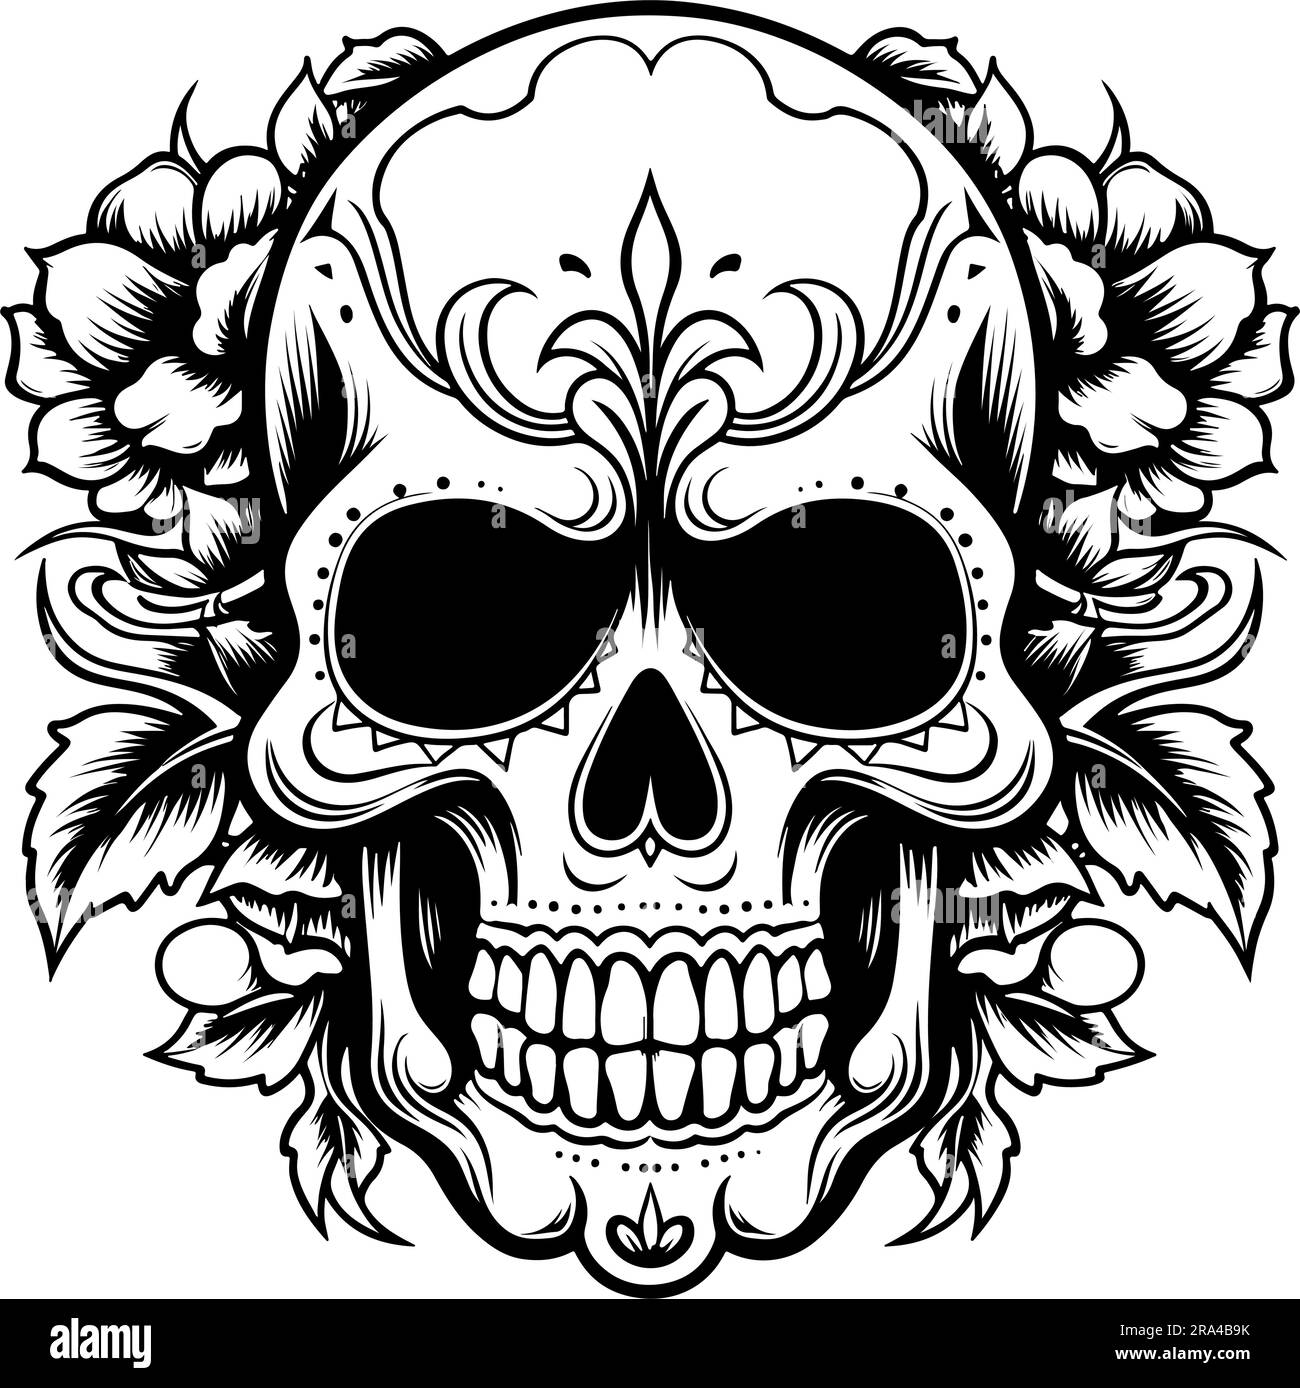 skull with flowers vector art inspired in lo dia de los muertos Stock Vector